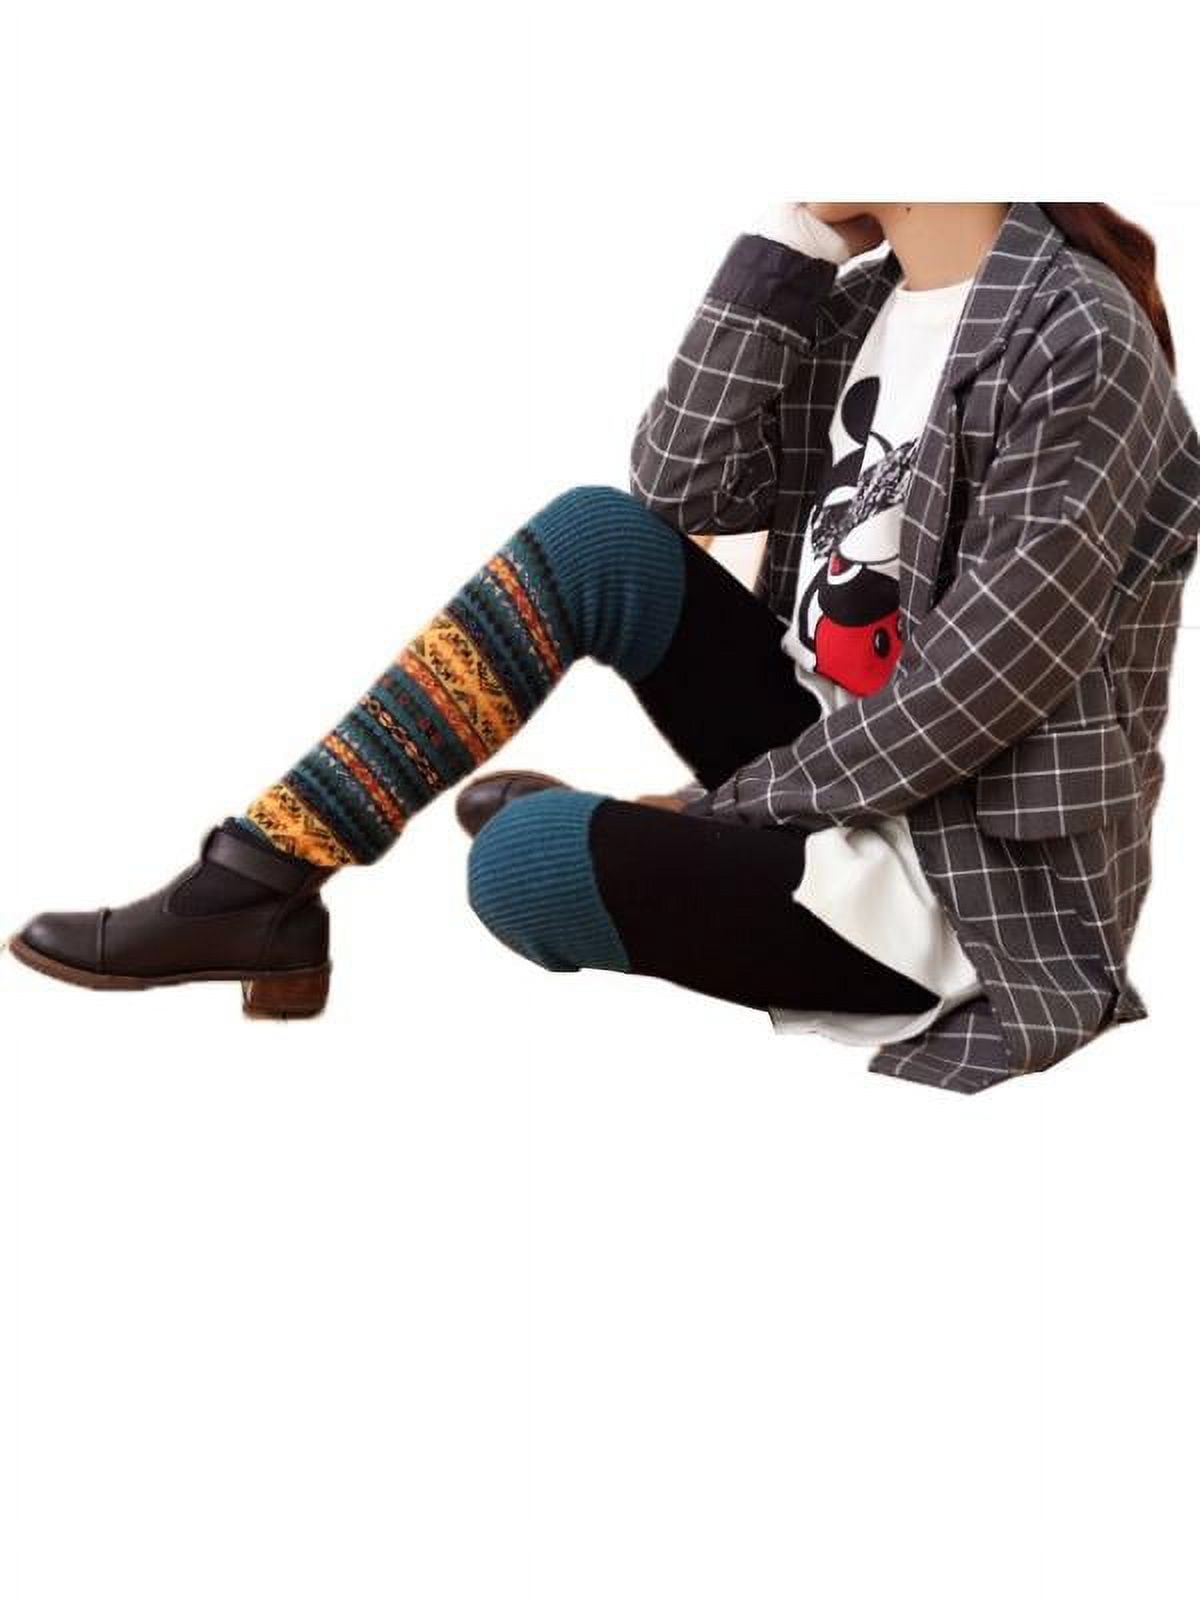 Hellokitty Fluffy Crocheted Leg Warmer Y2k Style Fashion Vintage Style 